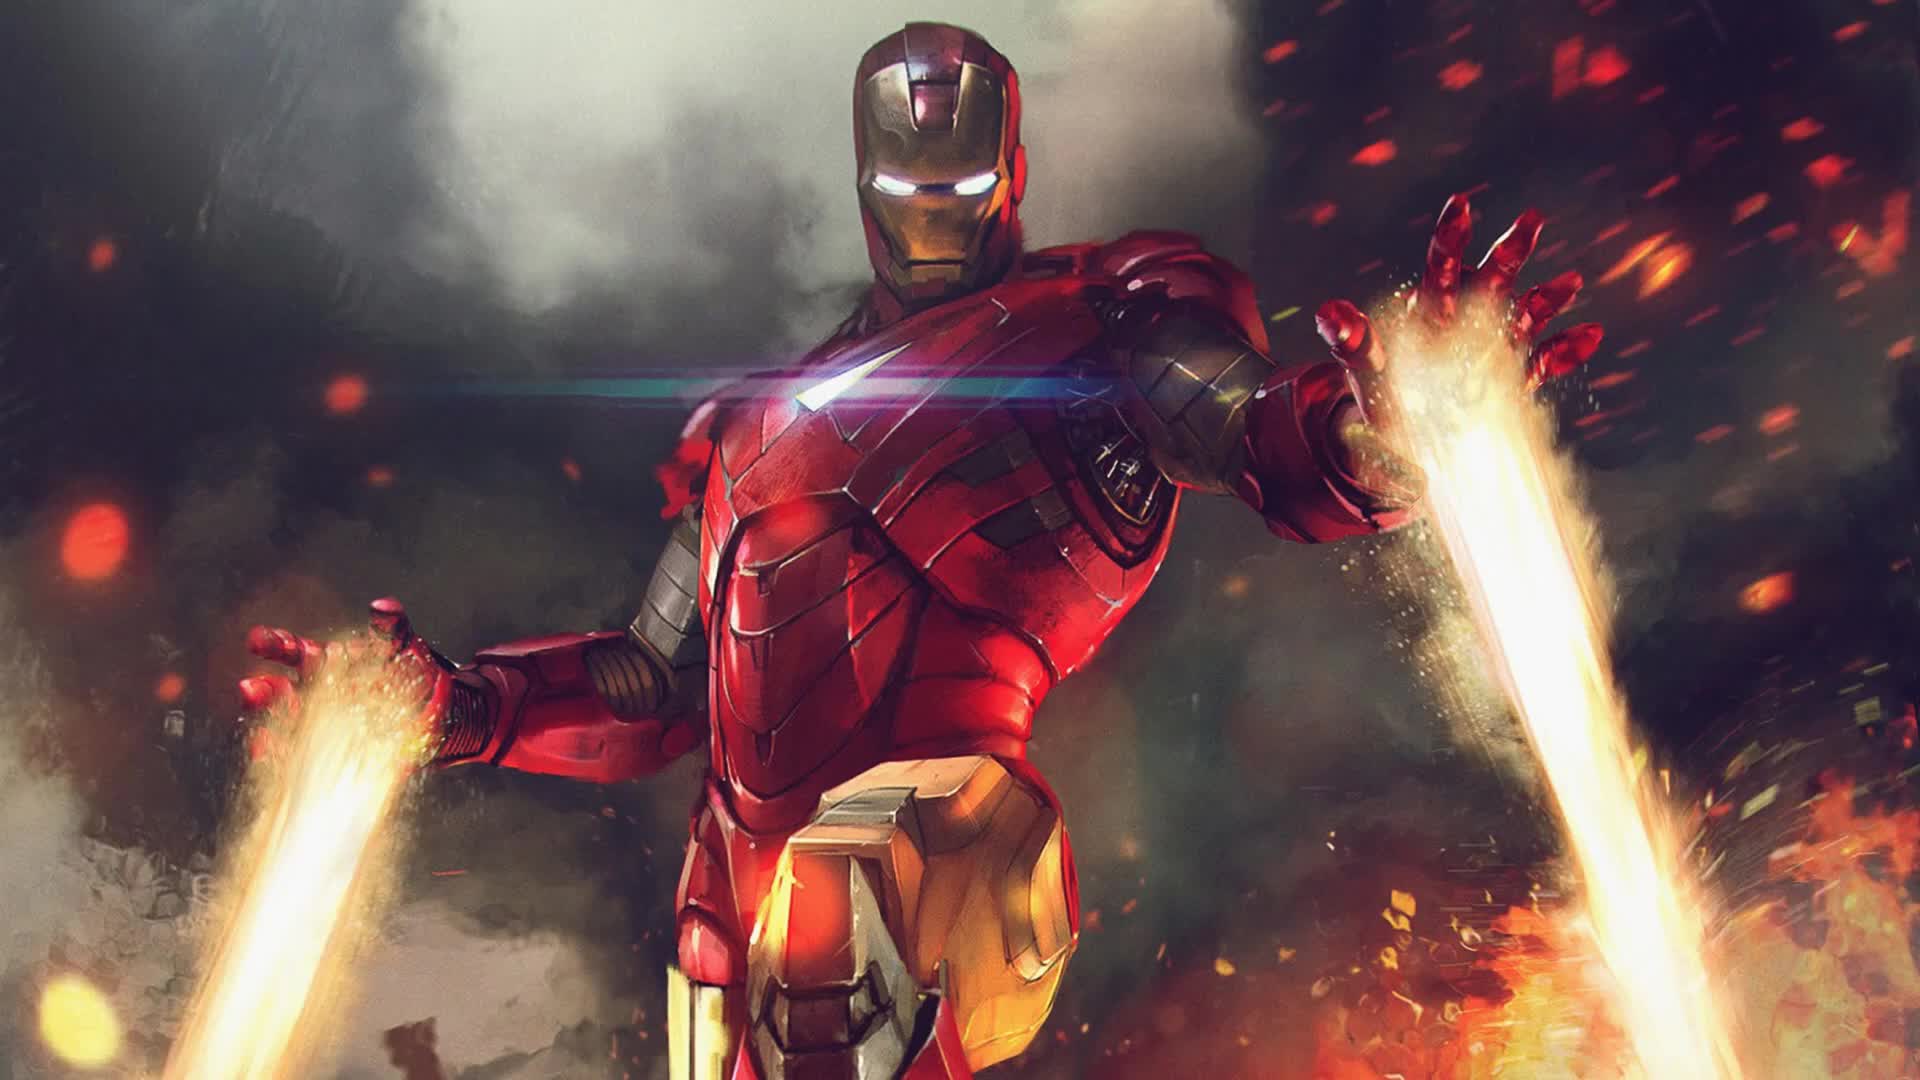 iron man 3d fond d'écran en direct,personnage fictif,super héros,homme de fer,oeuvre de cg,capture d'écran